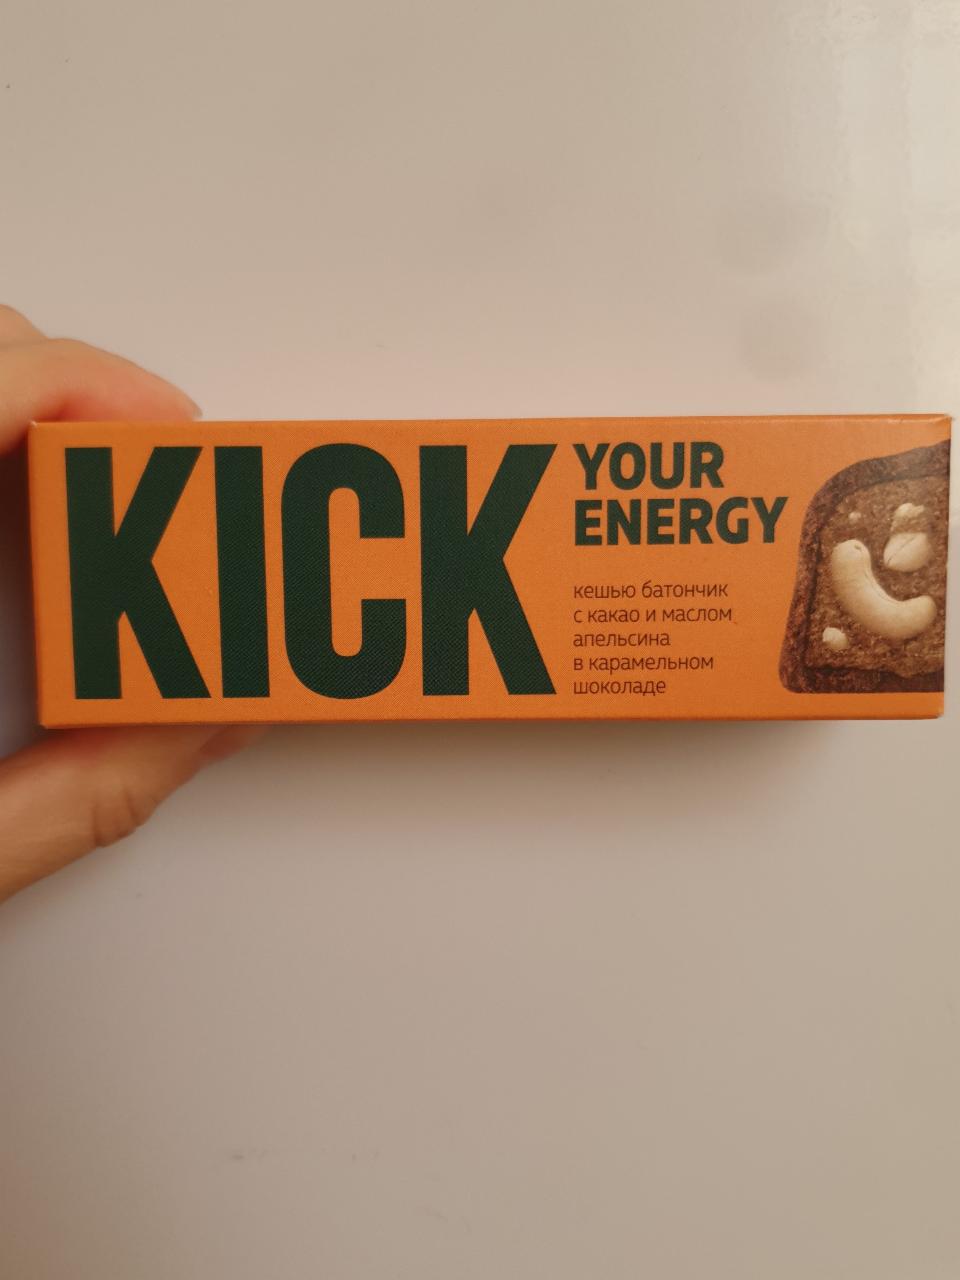 Фото - Кешью батончик с какаои маслом апельсина в карамельном шоколаде Kick your energy